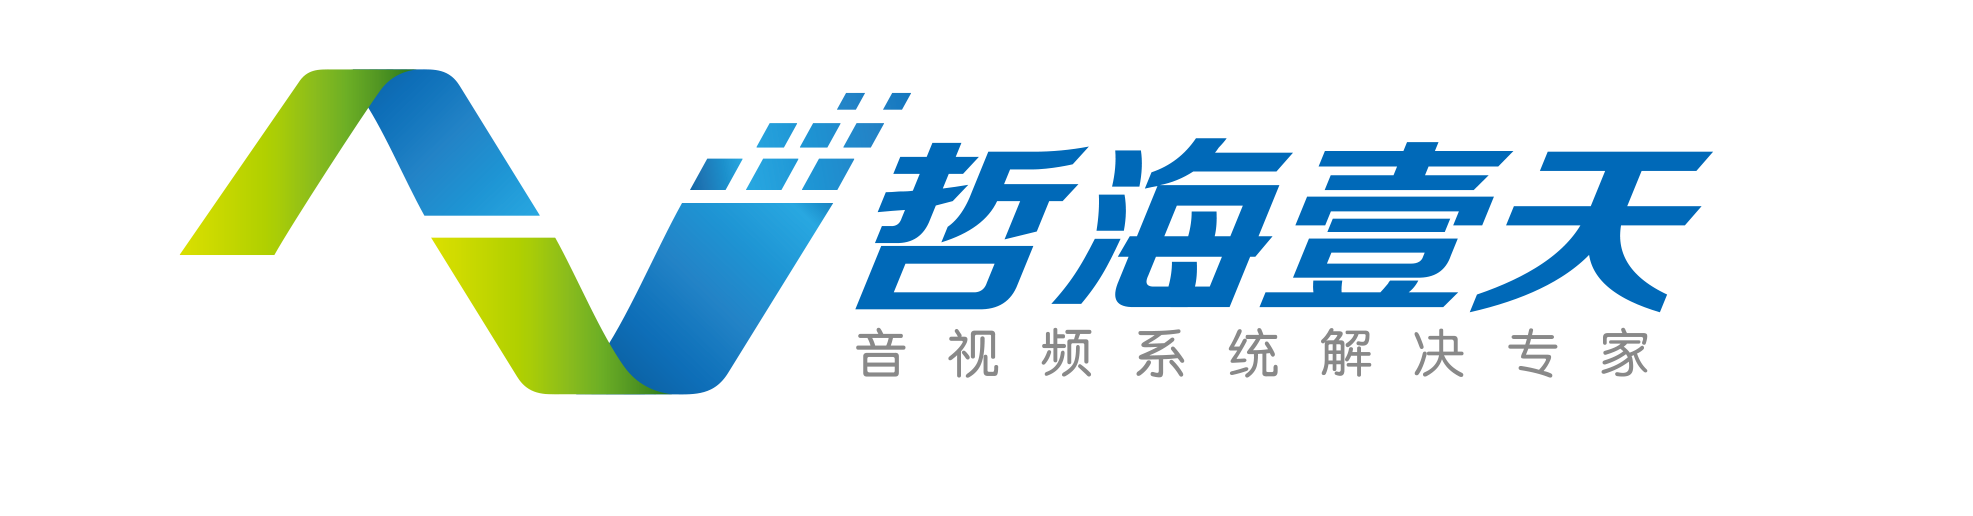 上海哲海壹天电子系统工程有限公司